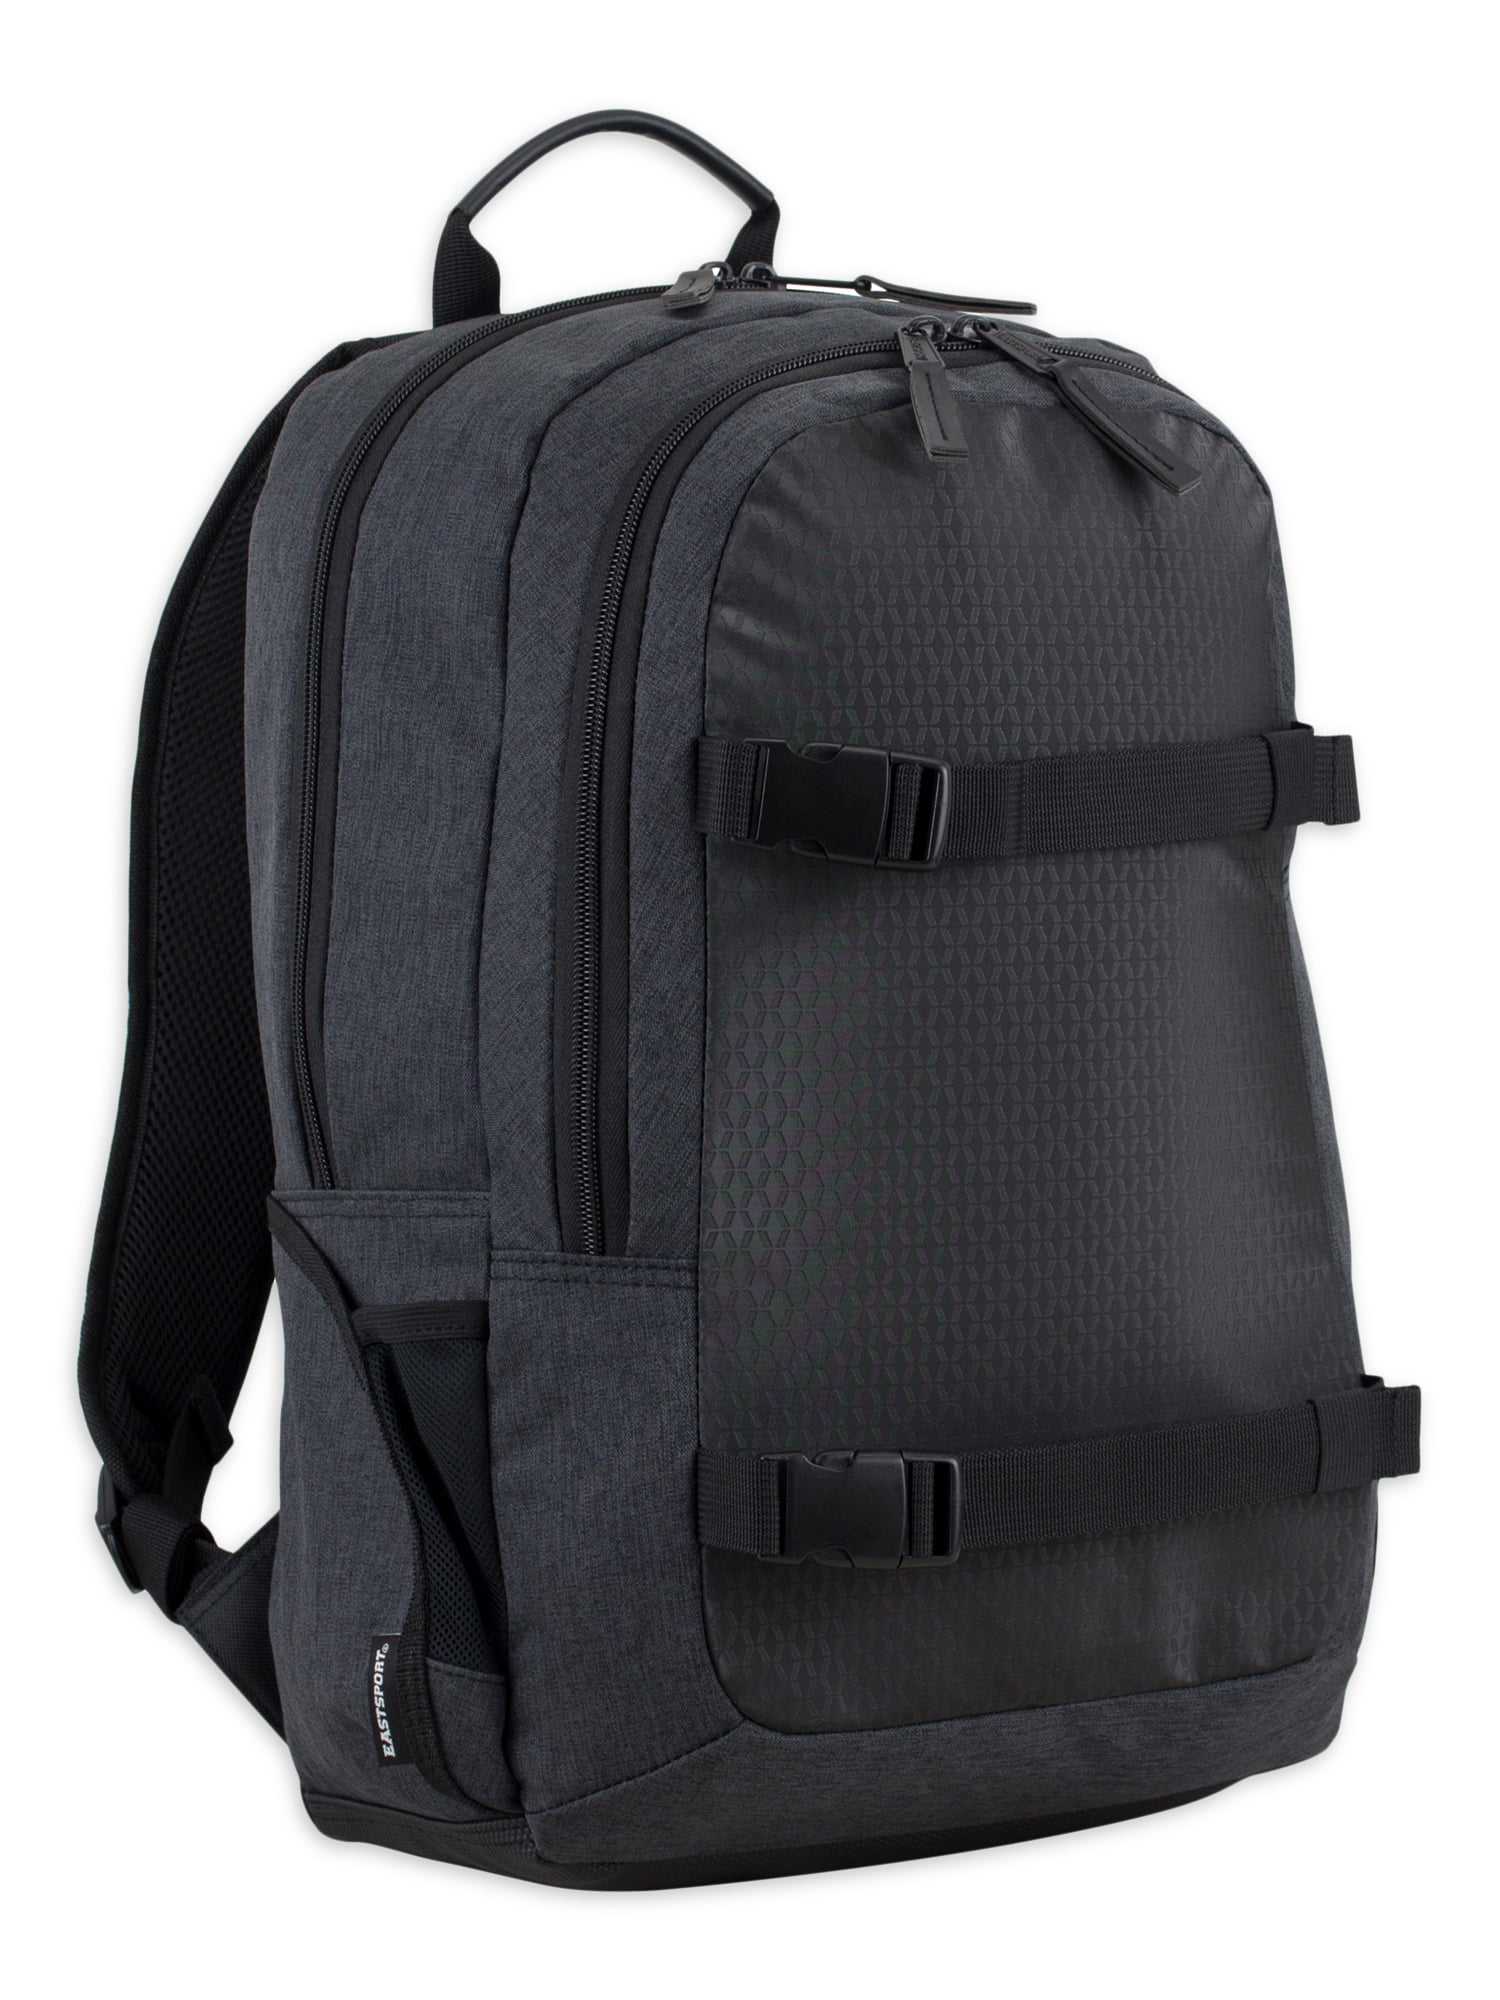 Eastsport Unisex Travel Backpack with Removable Shoulder Bag, Black